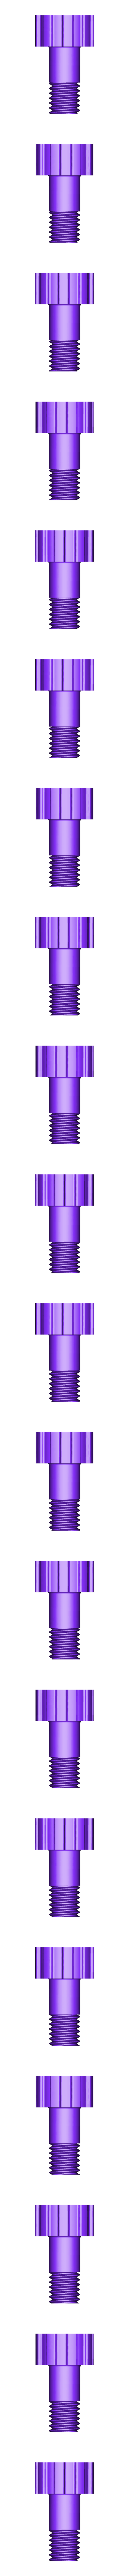 Wheel_Screw.stl Файл STL Вода с питанием - Массаж / Дилдо・Дизайн для загрузки и 3D-печати, Designs-a-lot